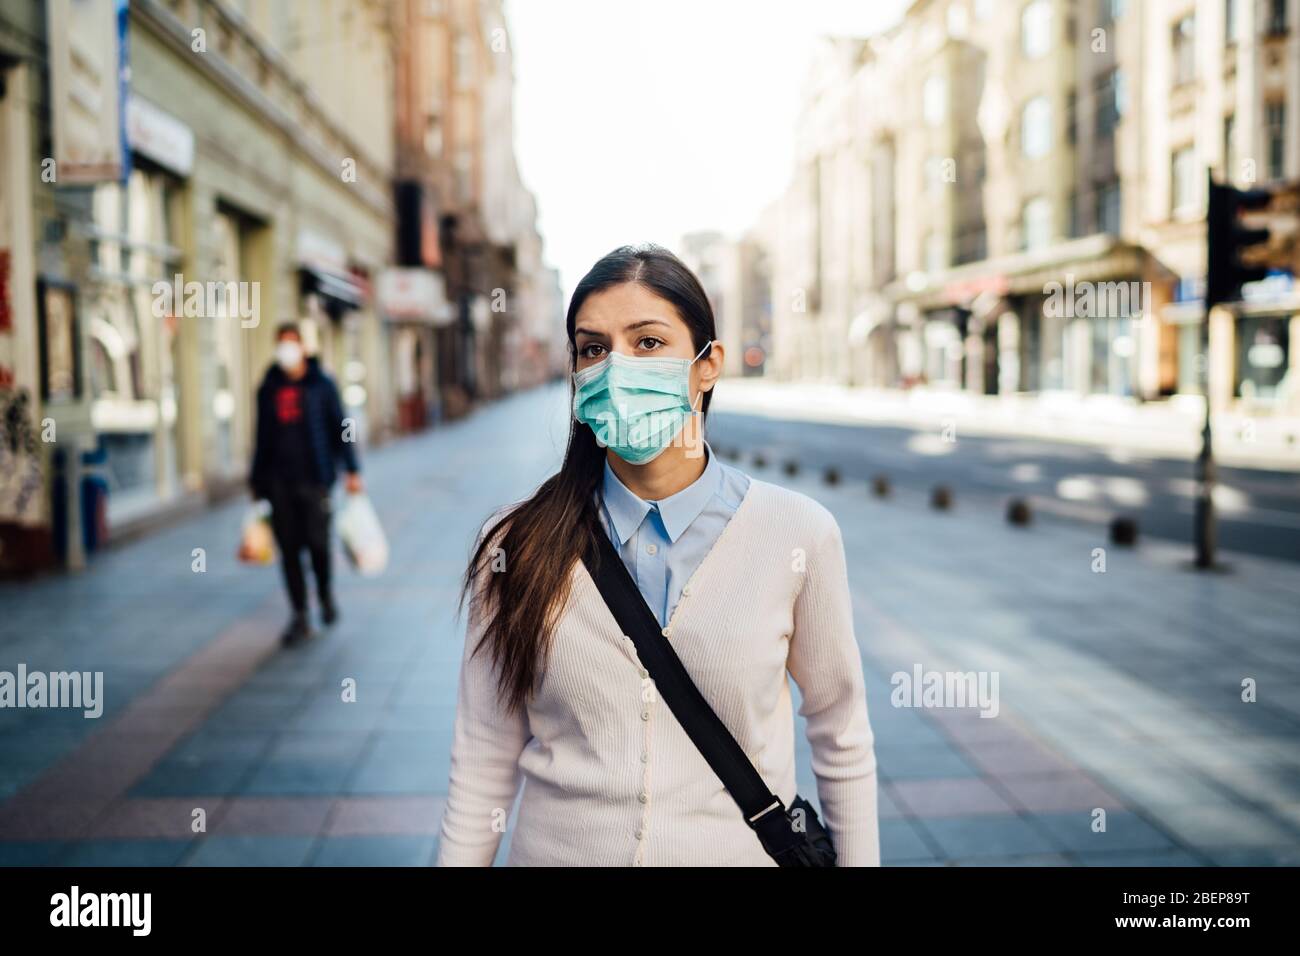 Verdächtige junge Erwachsene, die während der Pandemie im öffentlichen Raum gehen.Wirkung der COVID-19.Schutzmaßnahme, Maske tragen.Richtlinien respektieren.Empty stre Stockfoto